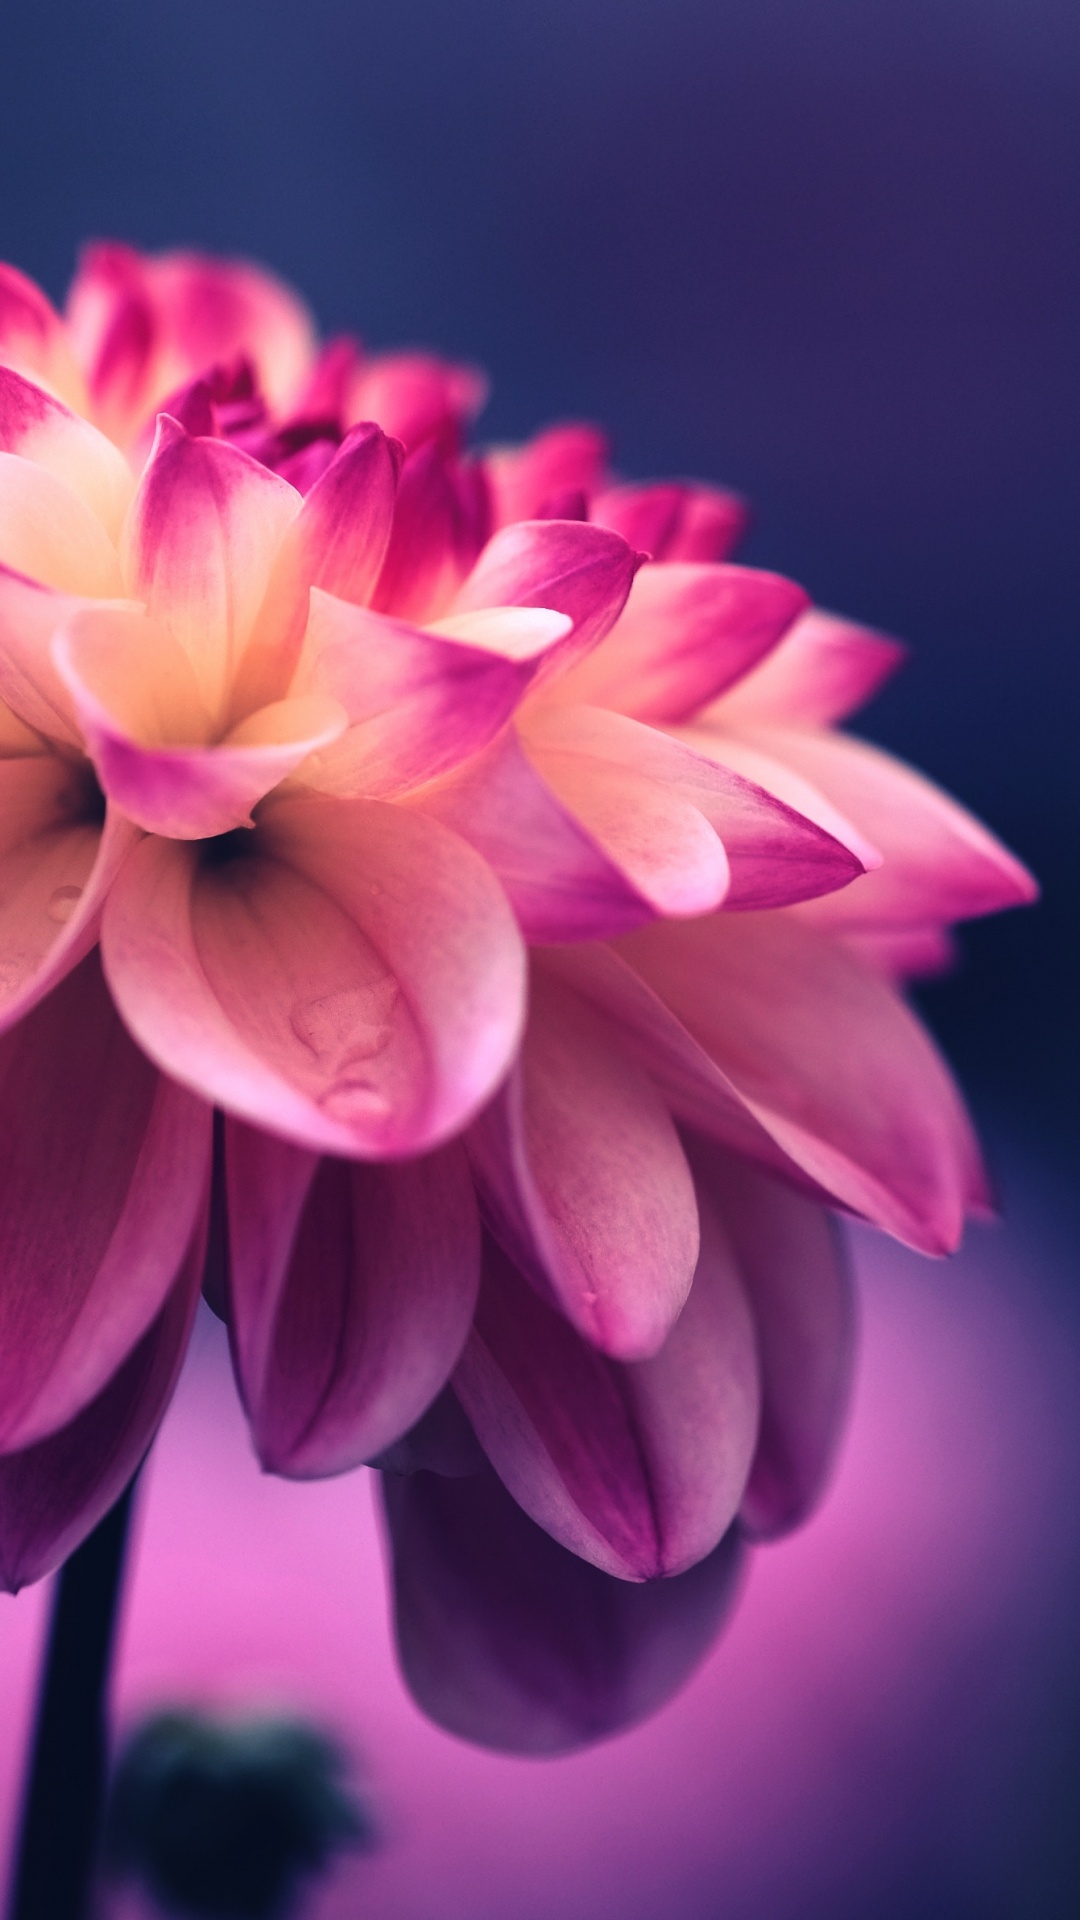 Pink, Seide, Regenbogen Stieg Auf, Blütenblatt, Blühende Pflanze. Wallpaper in 1080x1920 Resolution